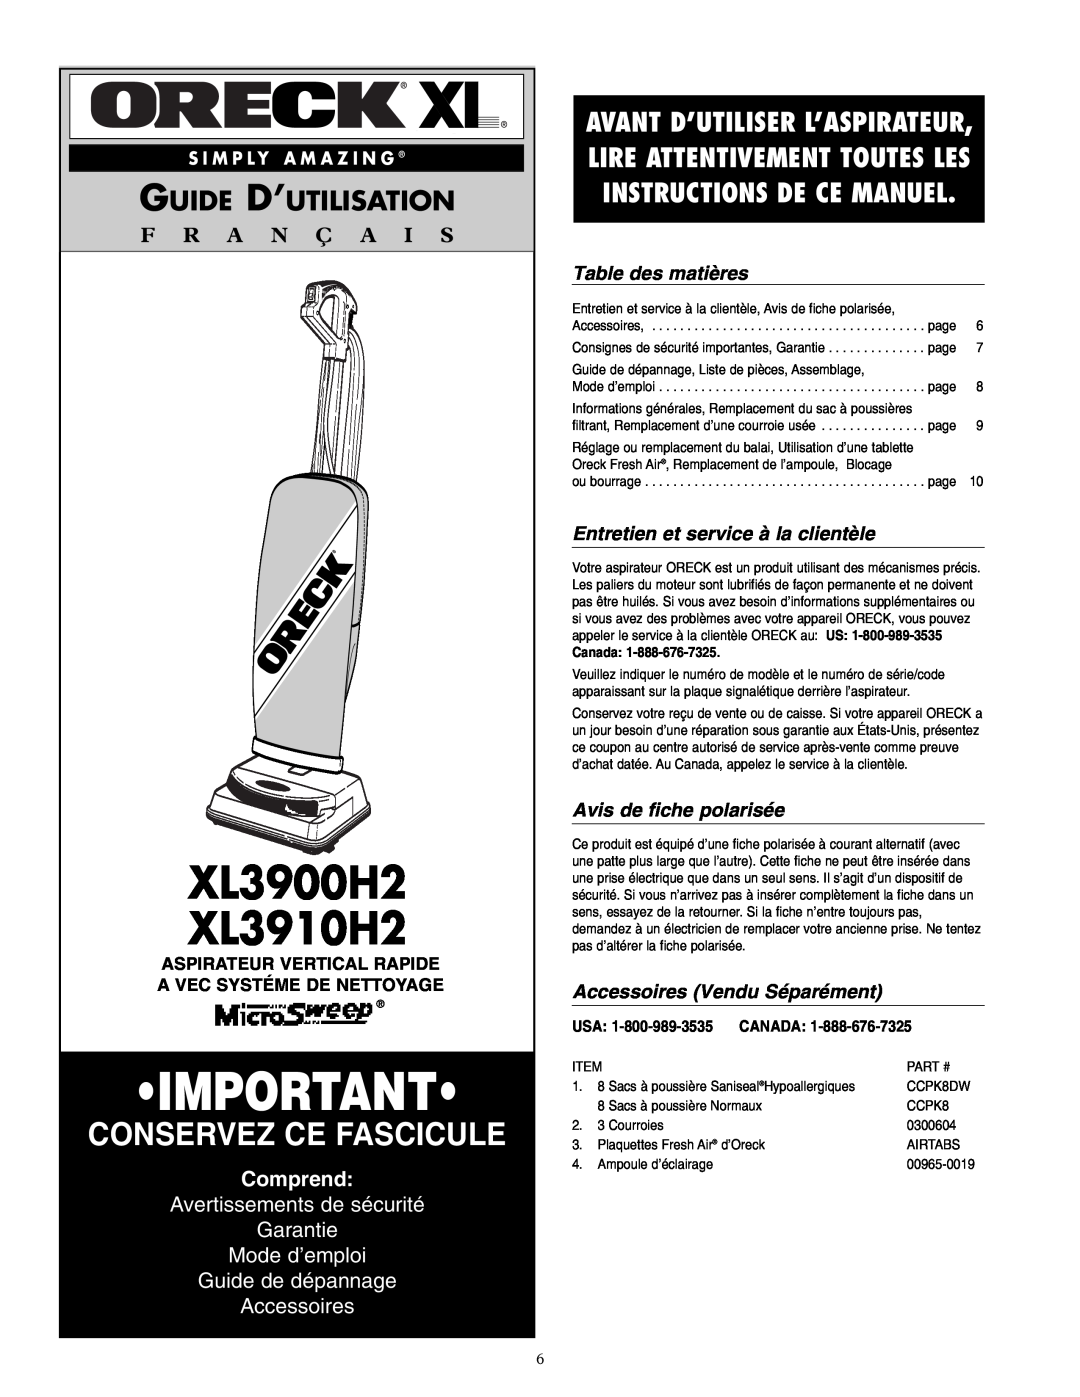 Oreck warranty XL3900H2 XL3910H2, Guide D’Utilisation, F R A N Ç A I S, Comprend, Guide de dépannage Accessoires, Canada 